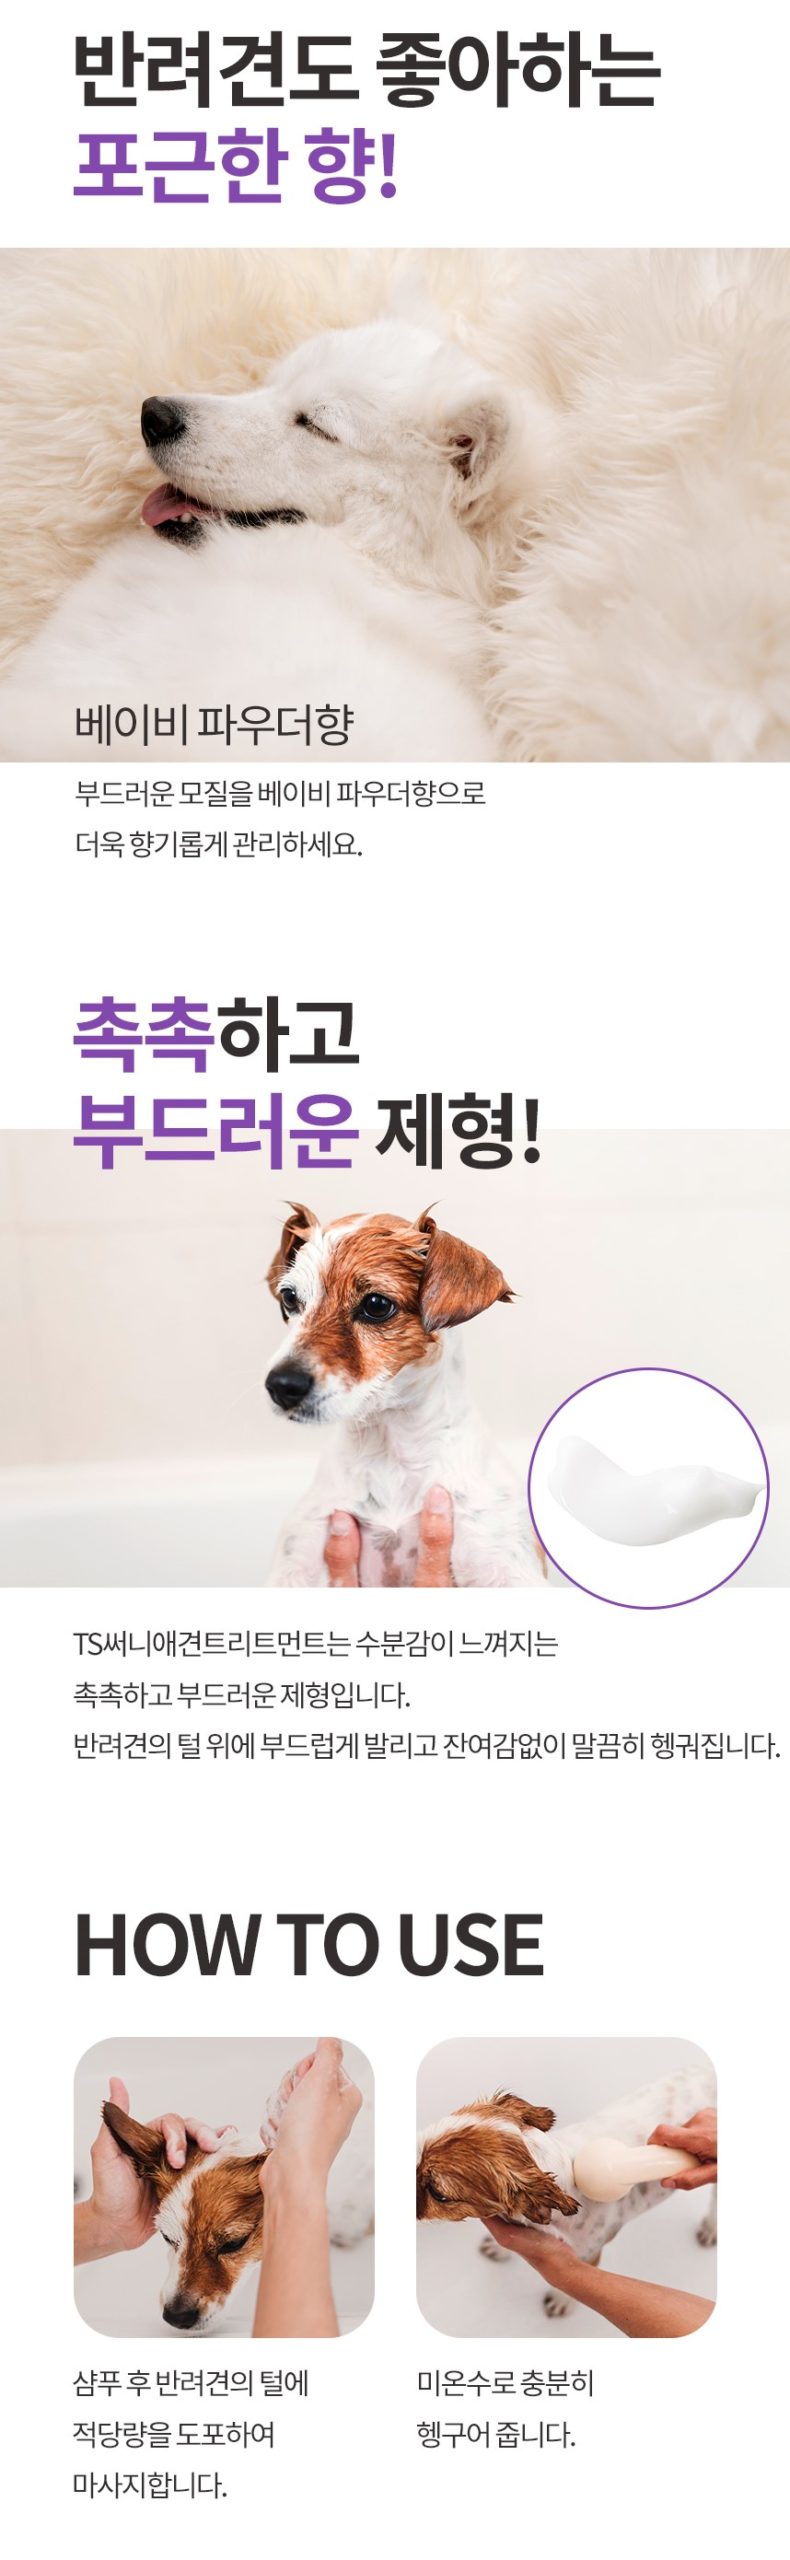 韓國食品-[TS] Sunny Pet Treatment 500ml